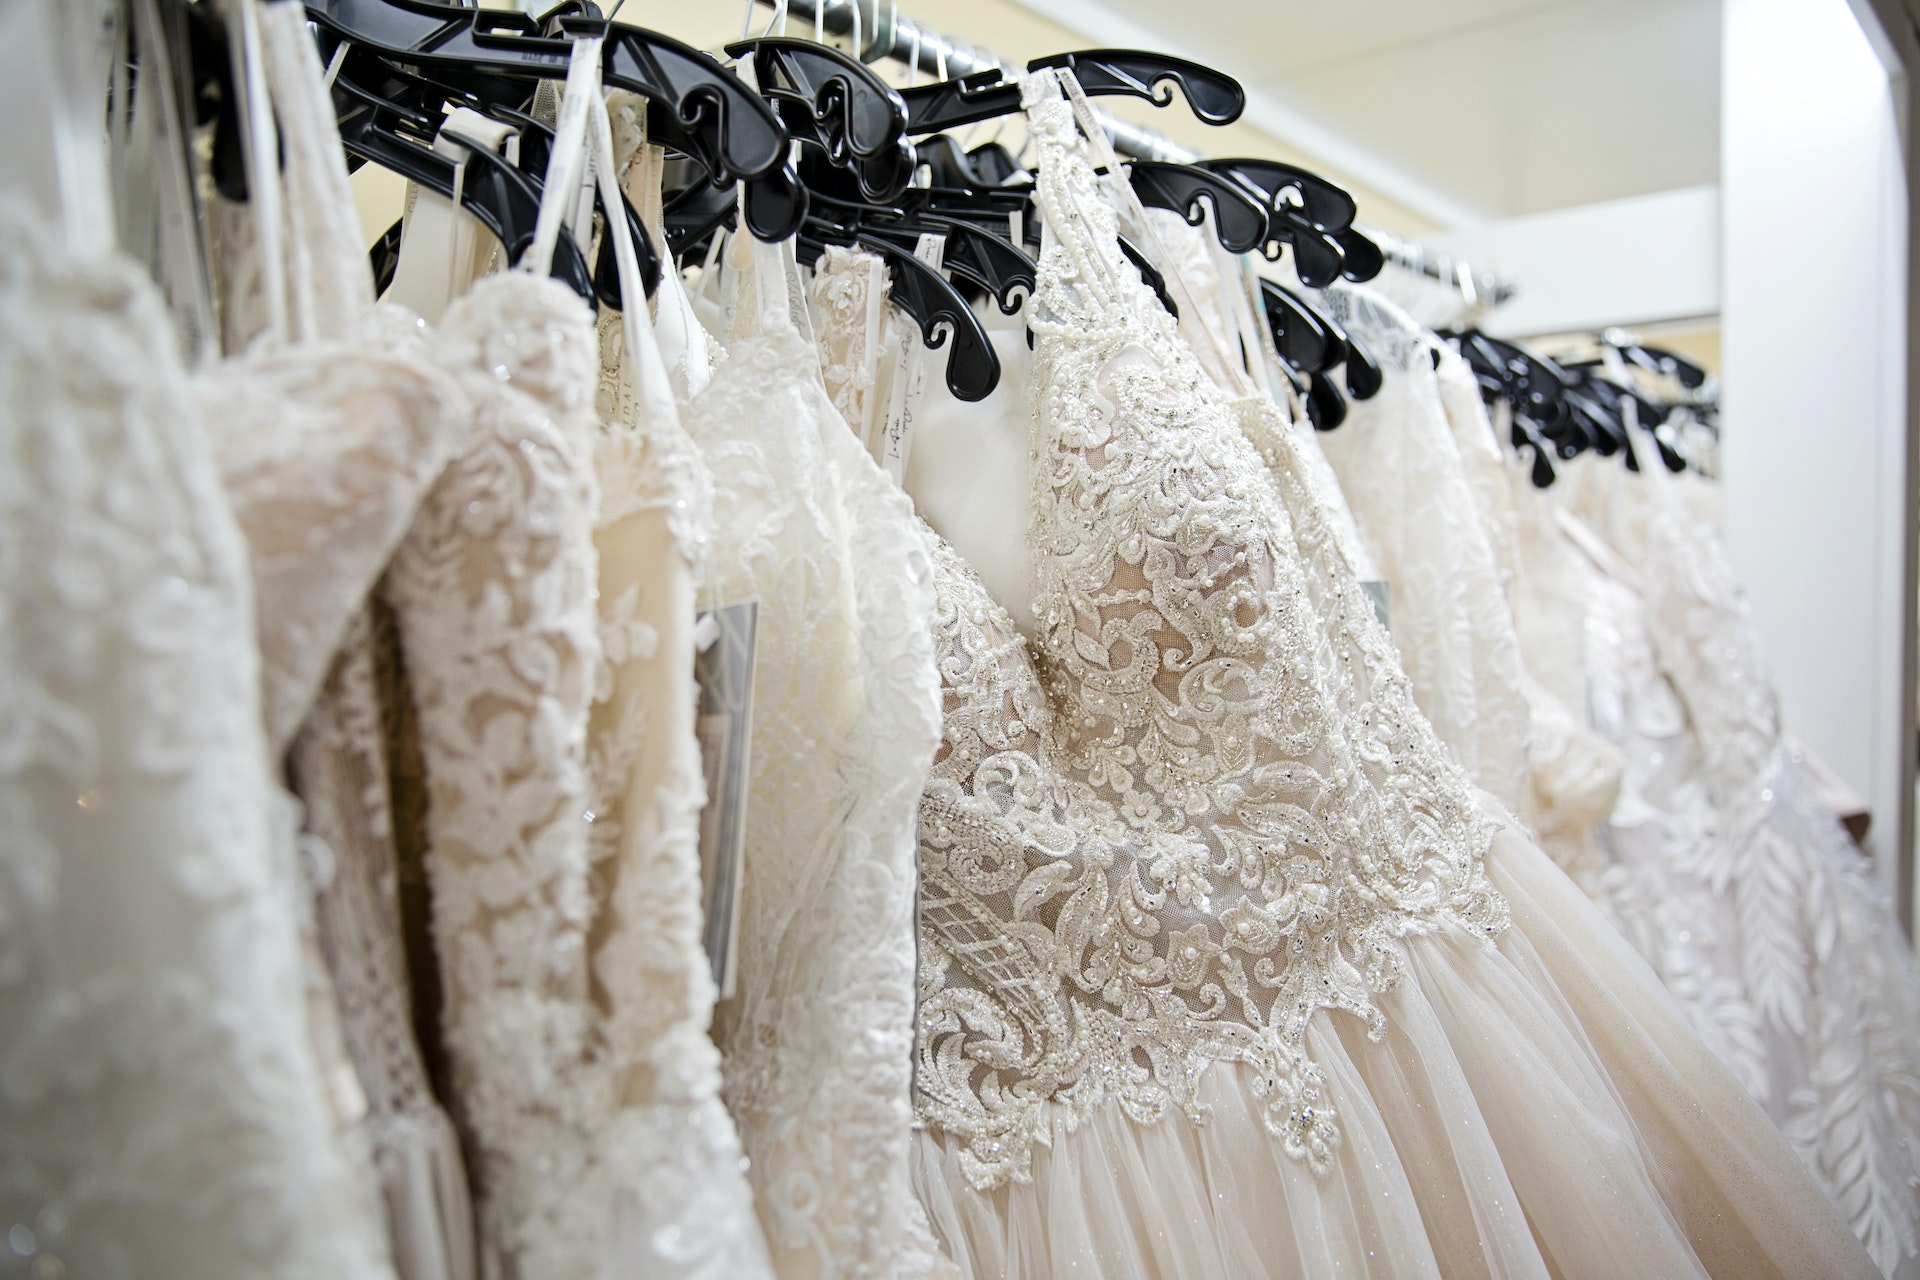 Brautkleider, die auf einem Ständer hängen | Quelle: Pexels